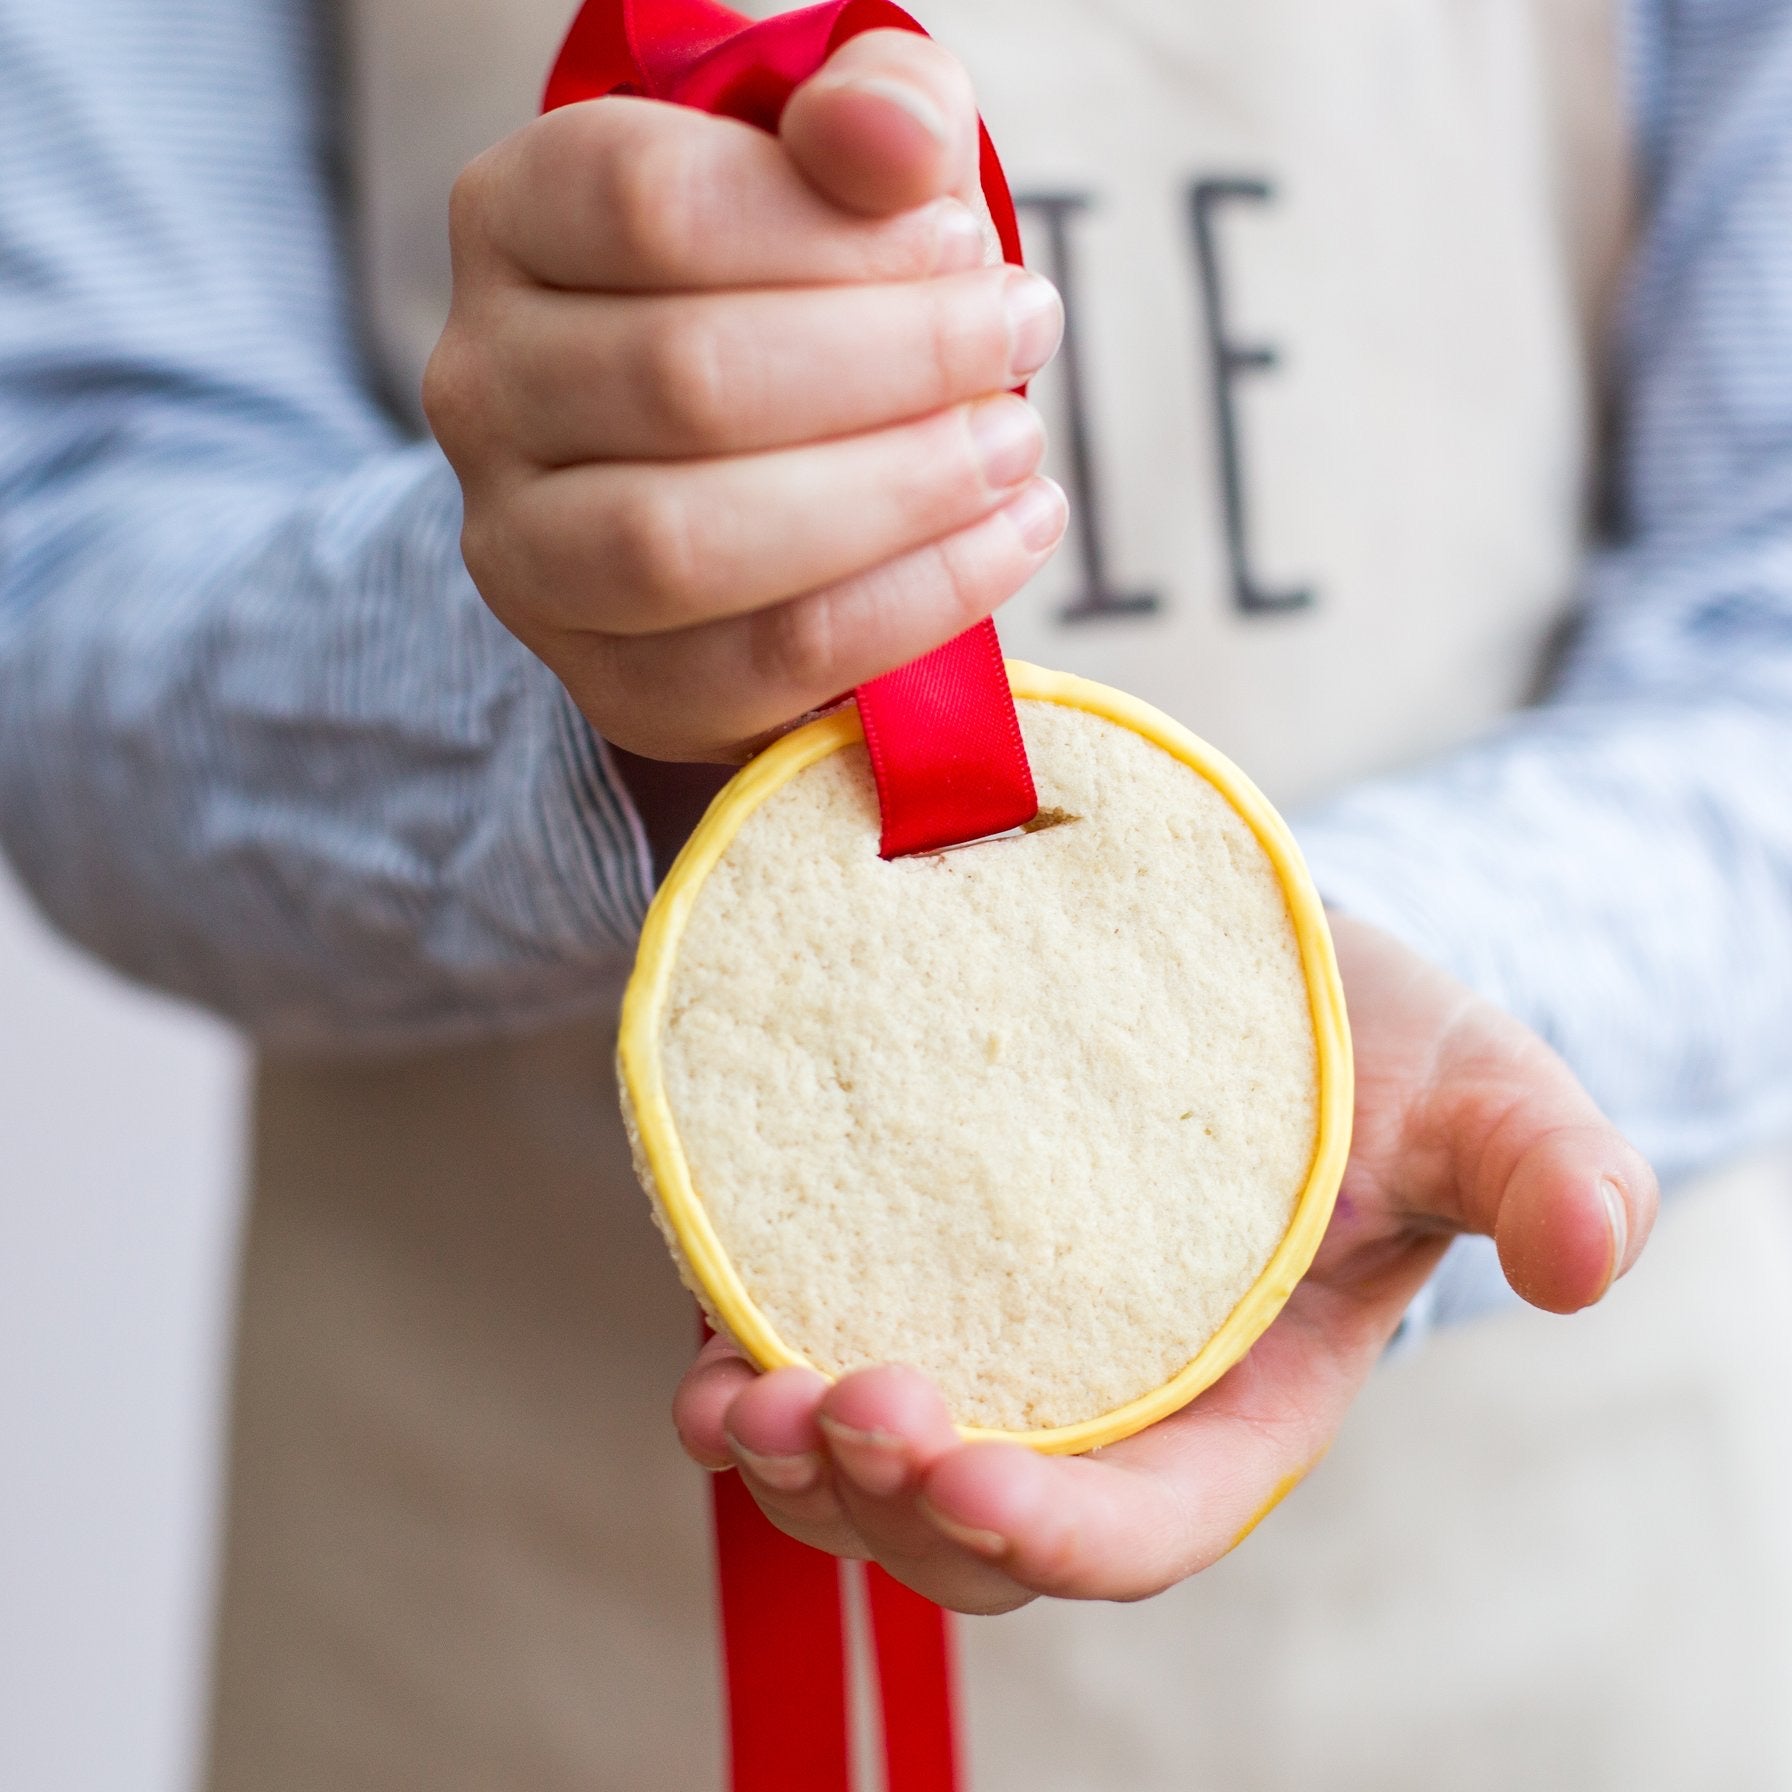 bake a medal biscuit